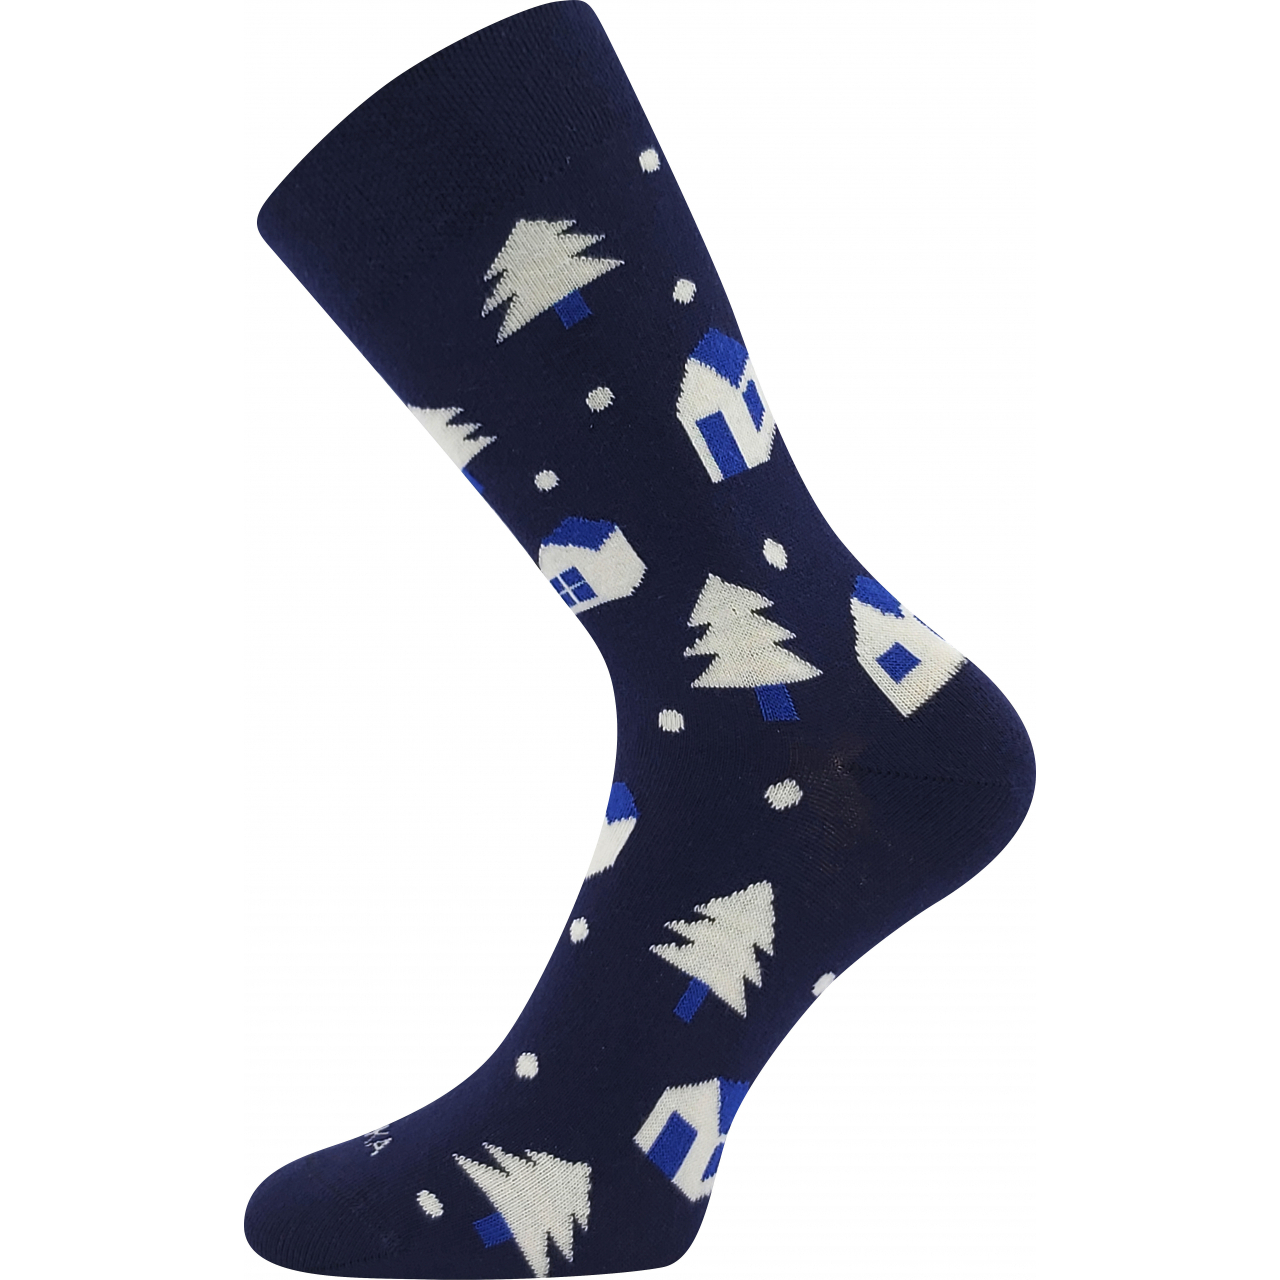 Ponožky slabé unisex Lonka Damerry Vánoce - tmavě modré, 39-42